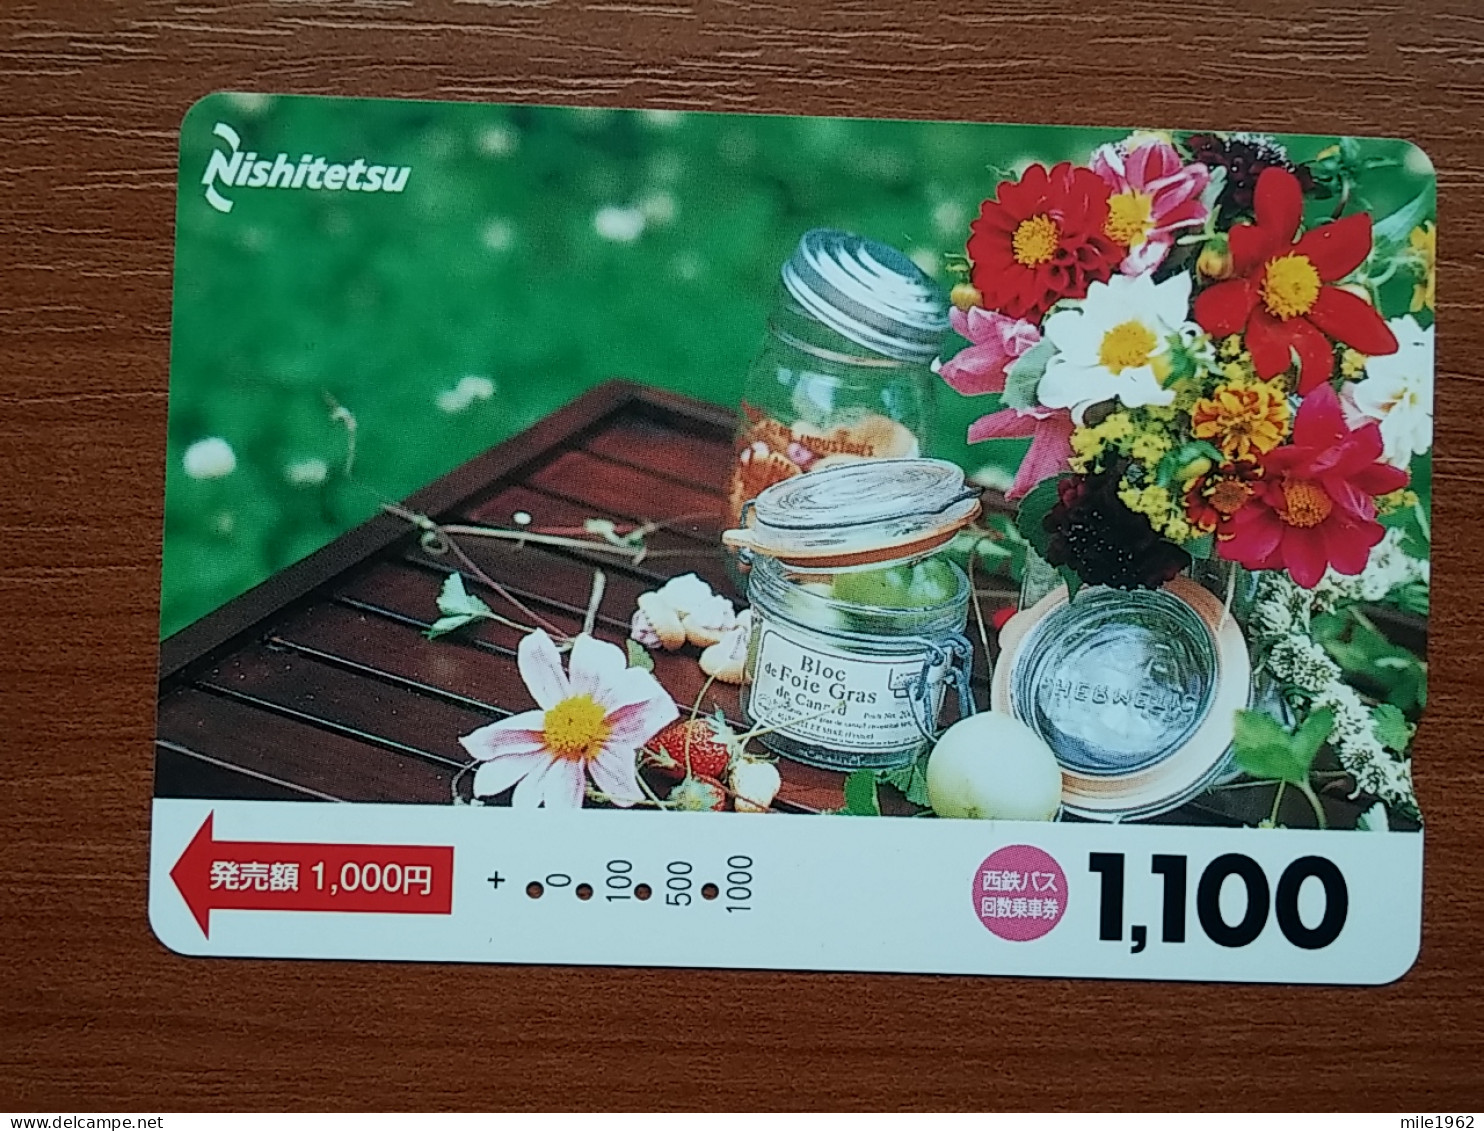 T-447 - JAPAN, Japon, Nipon, Carte Prepayee, Prepaid Card, FLOWER, FLEUR - Bloemen